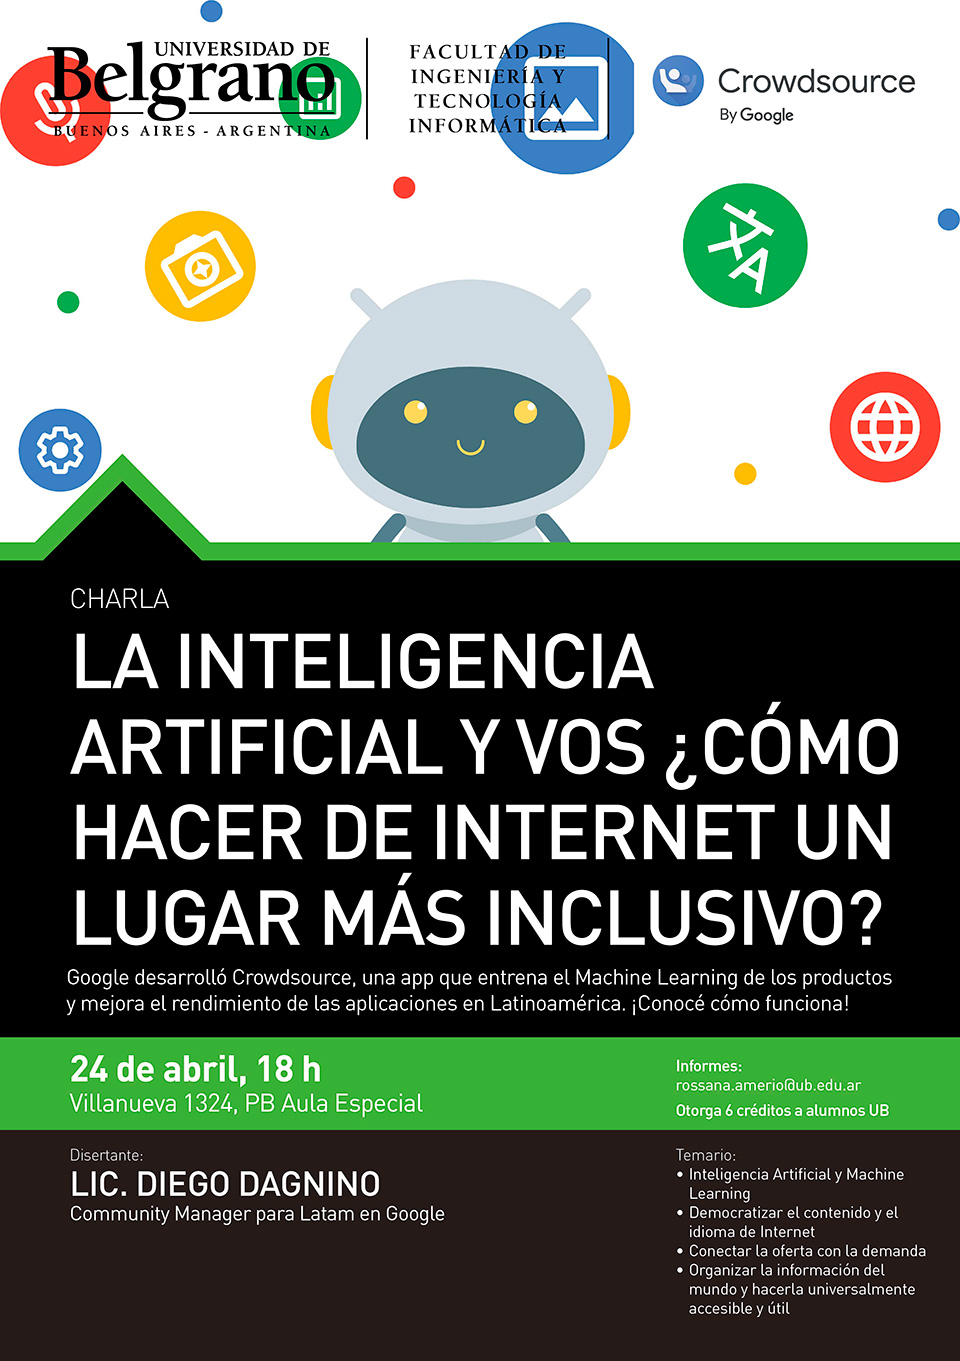 Universidad de Belgrano | La Inteligencia Artificial y Vos